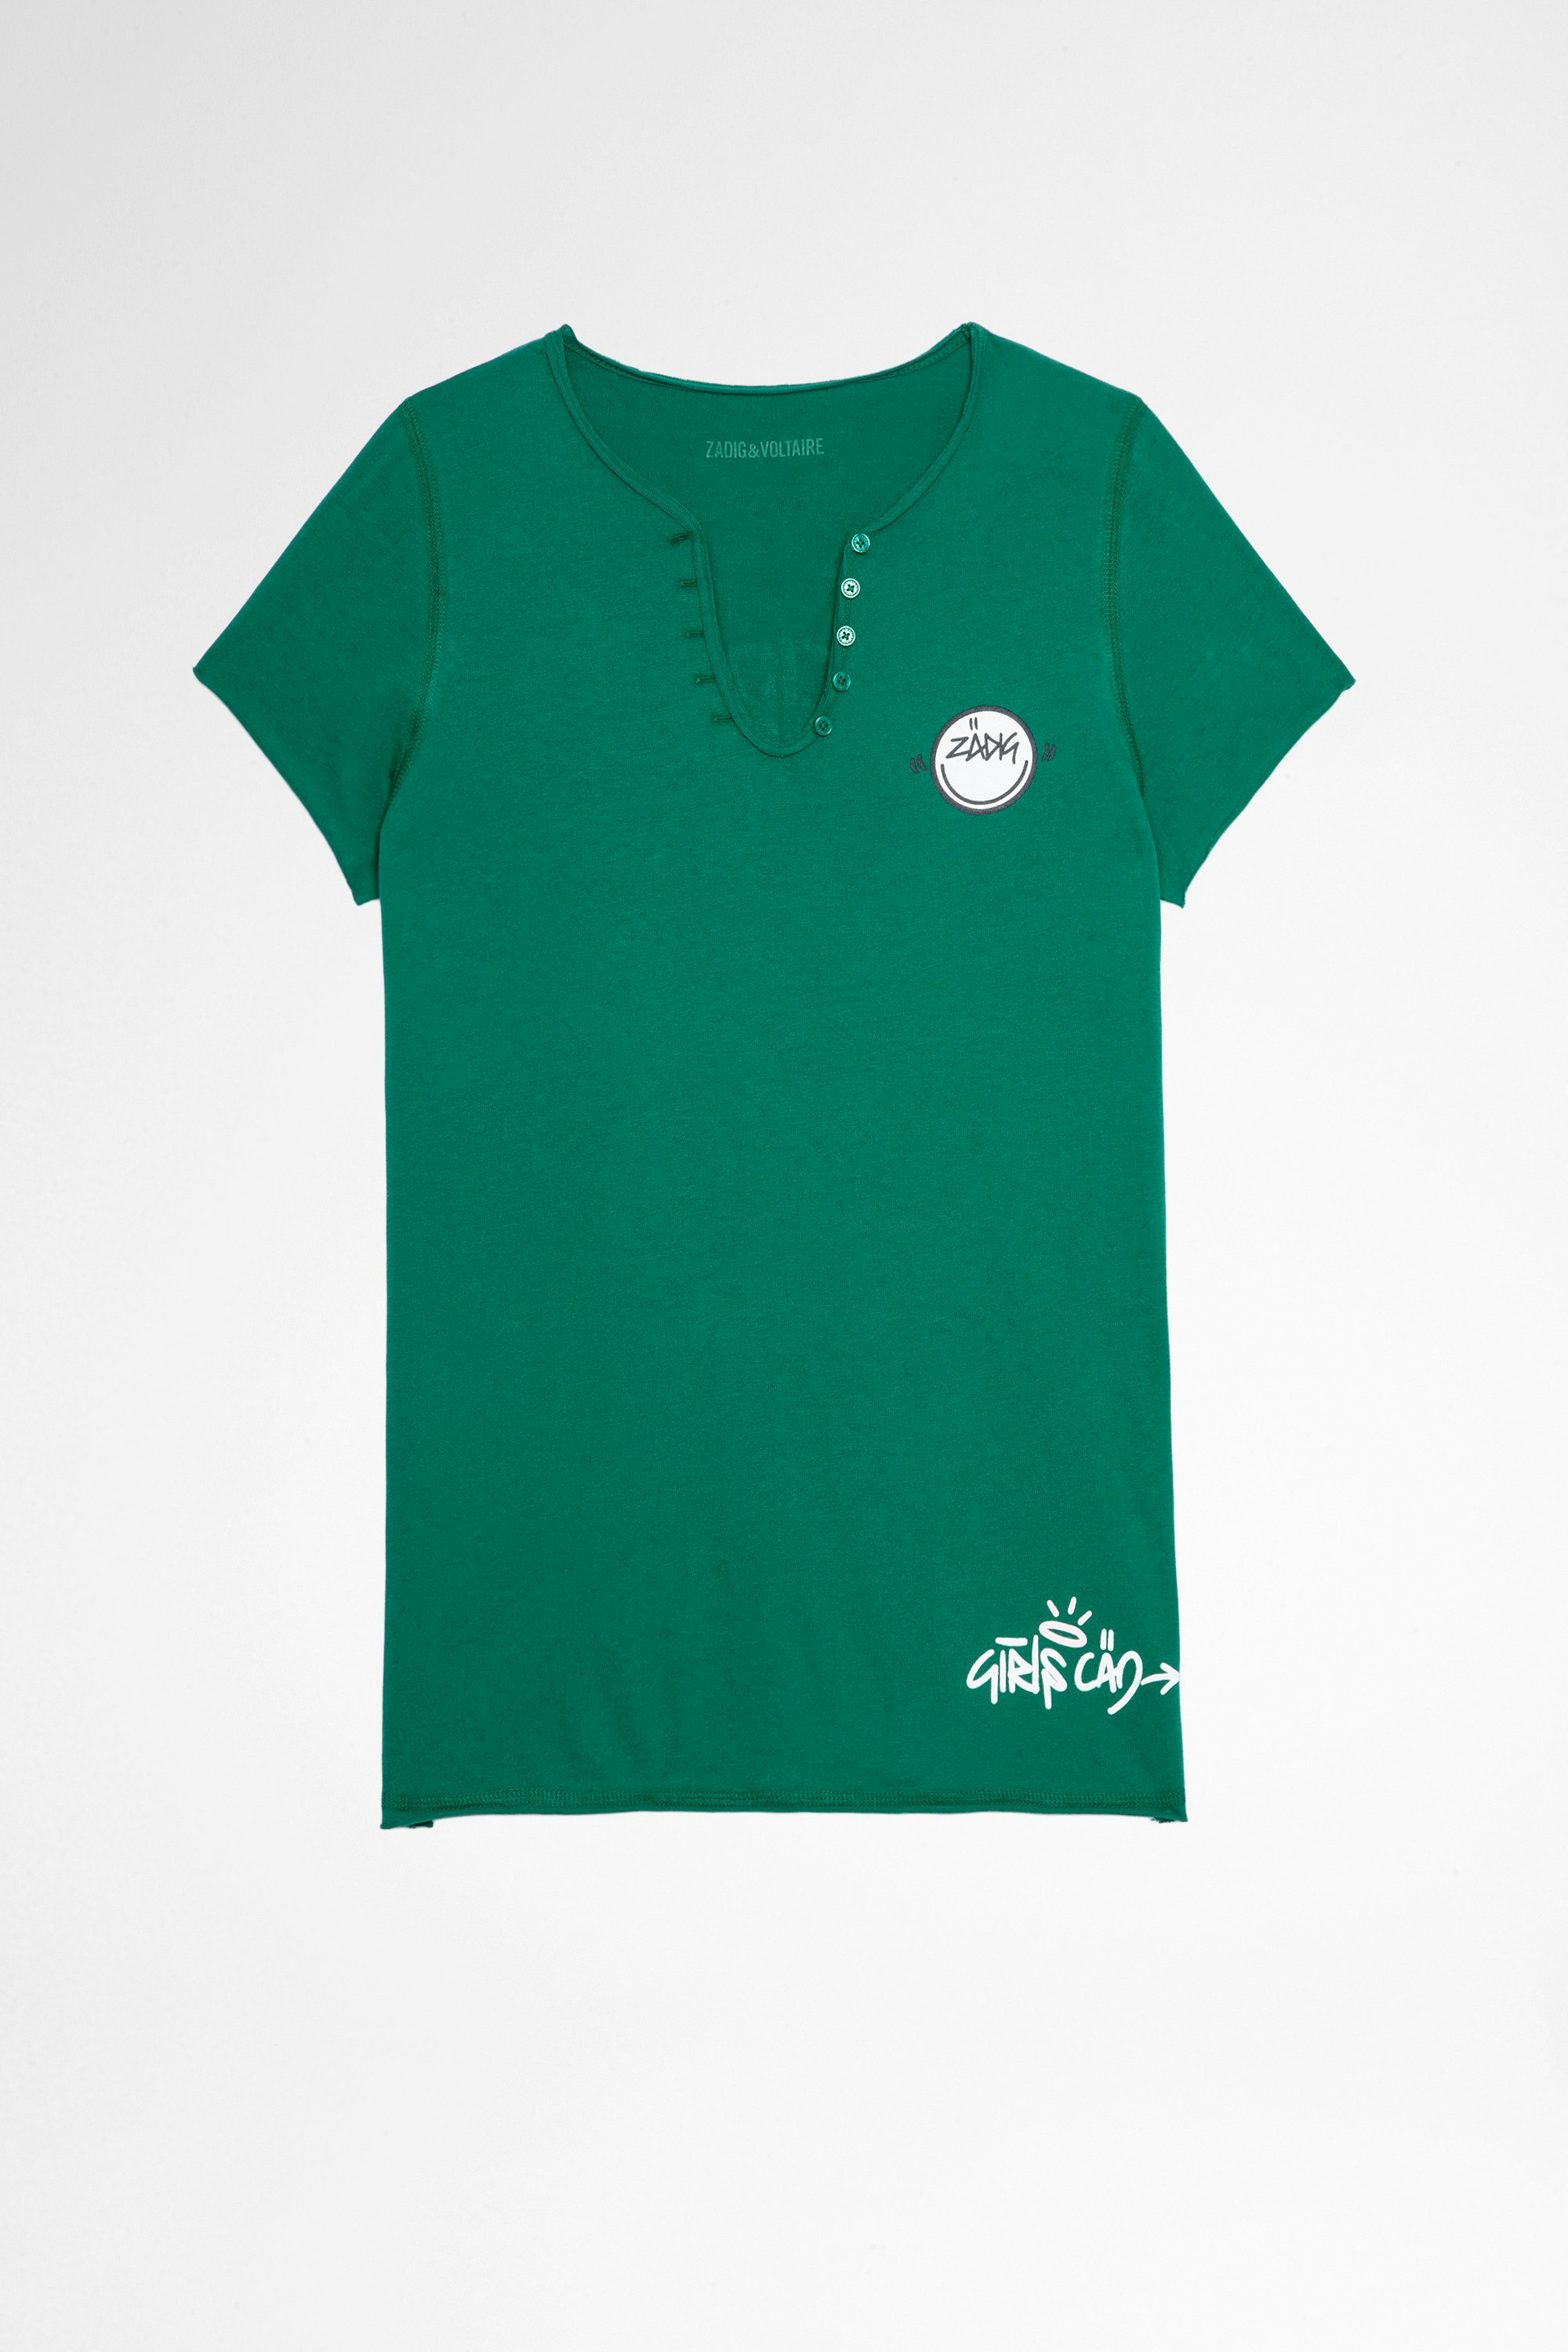 Camiseta Tunisien Multicusto Camiseta de mujer de algodón verde con cuello tunecino Girls can do anything. Este producto cuenta con la certificación GOTS y está confeccionado con fibras procedentes de la agricultura ecológica.